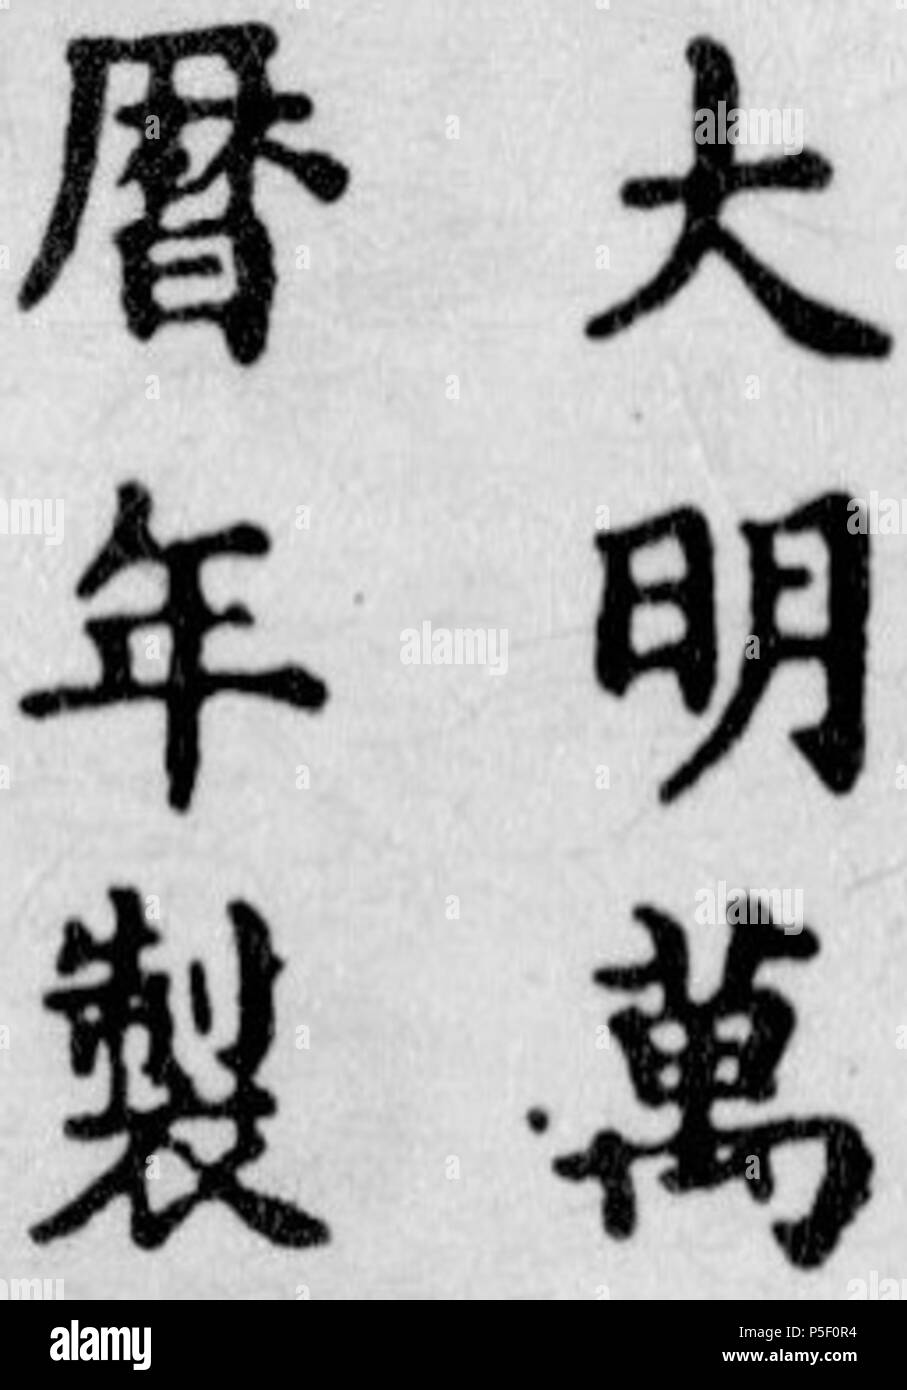 N/A. Englisch: Wanli (Ming Dynastie) Porzellan markieren. Die Inschrift lautet von oben nach unten und von rechts nach links: Da (große) Ming (Ming) Wan-li (wanli) Nian (Zeitraum) Zhi (bilden). Zwischen 1567 und 1620. Unbekannt 17 1567-1620 Wanli (Ming Dynastie) Porzellan mark Stockfoto